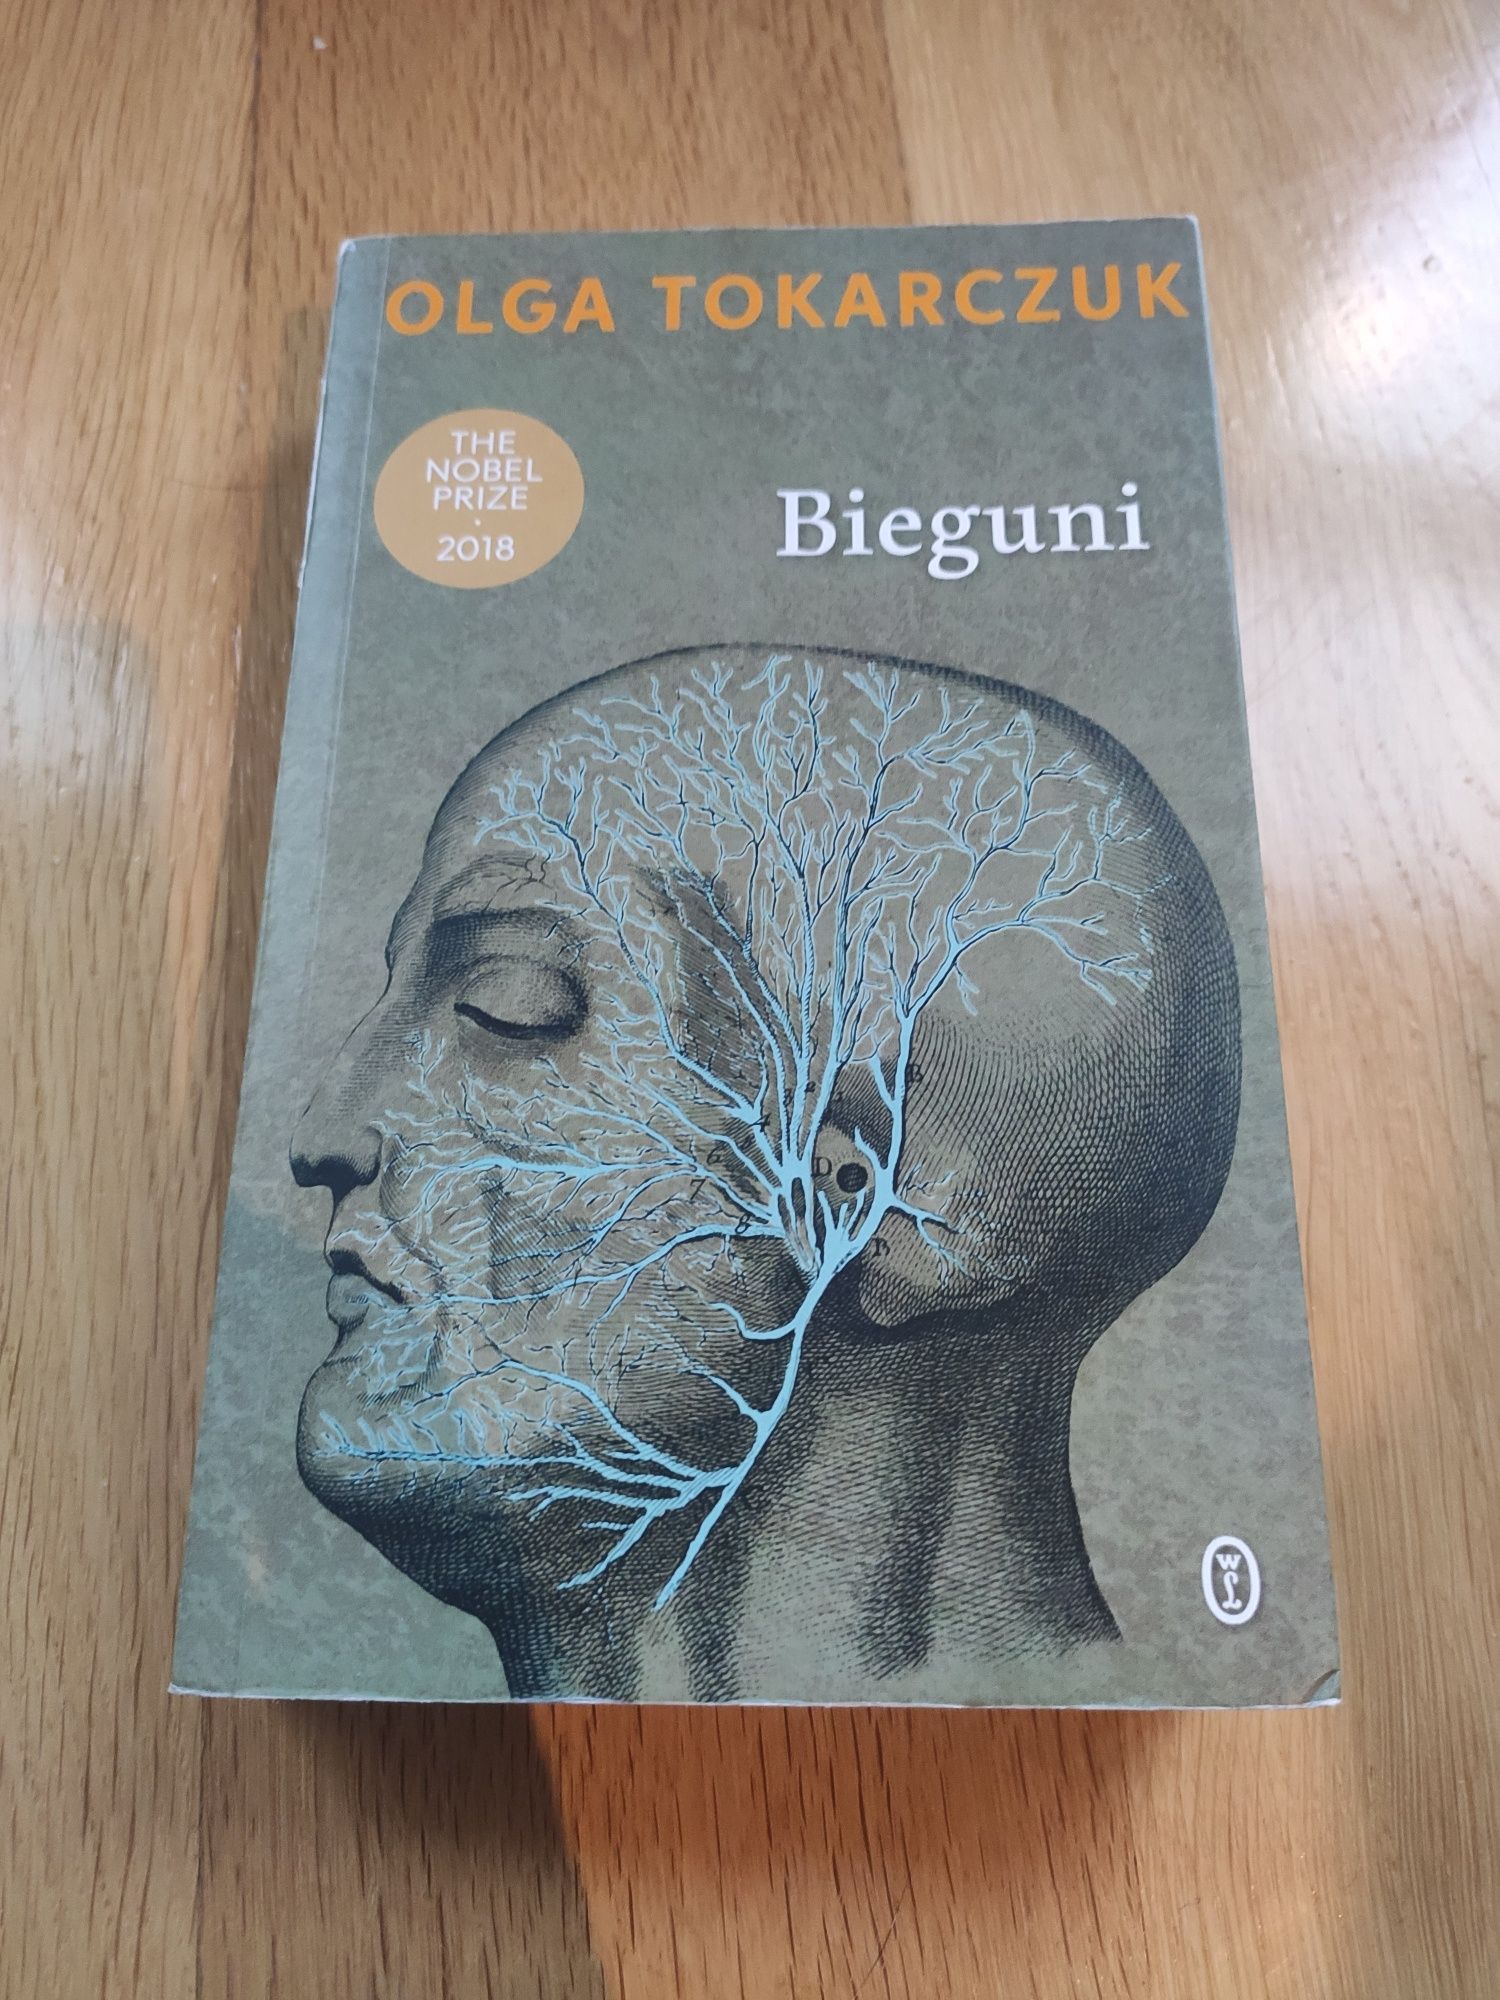 Książka "Bieguni" Olgi Tokarczuk